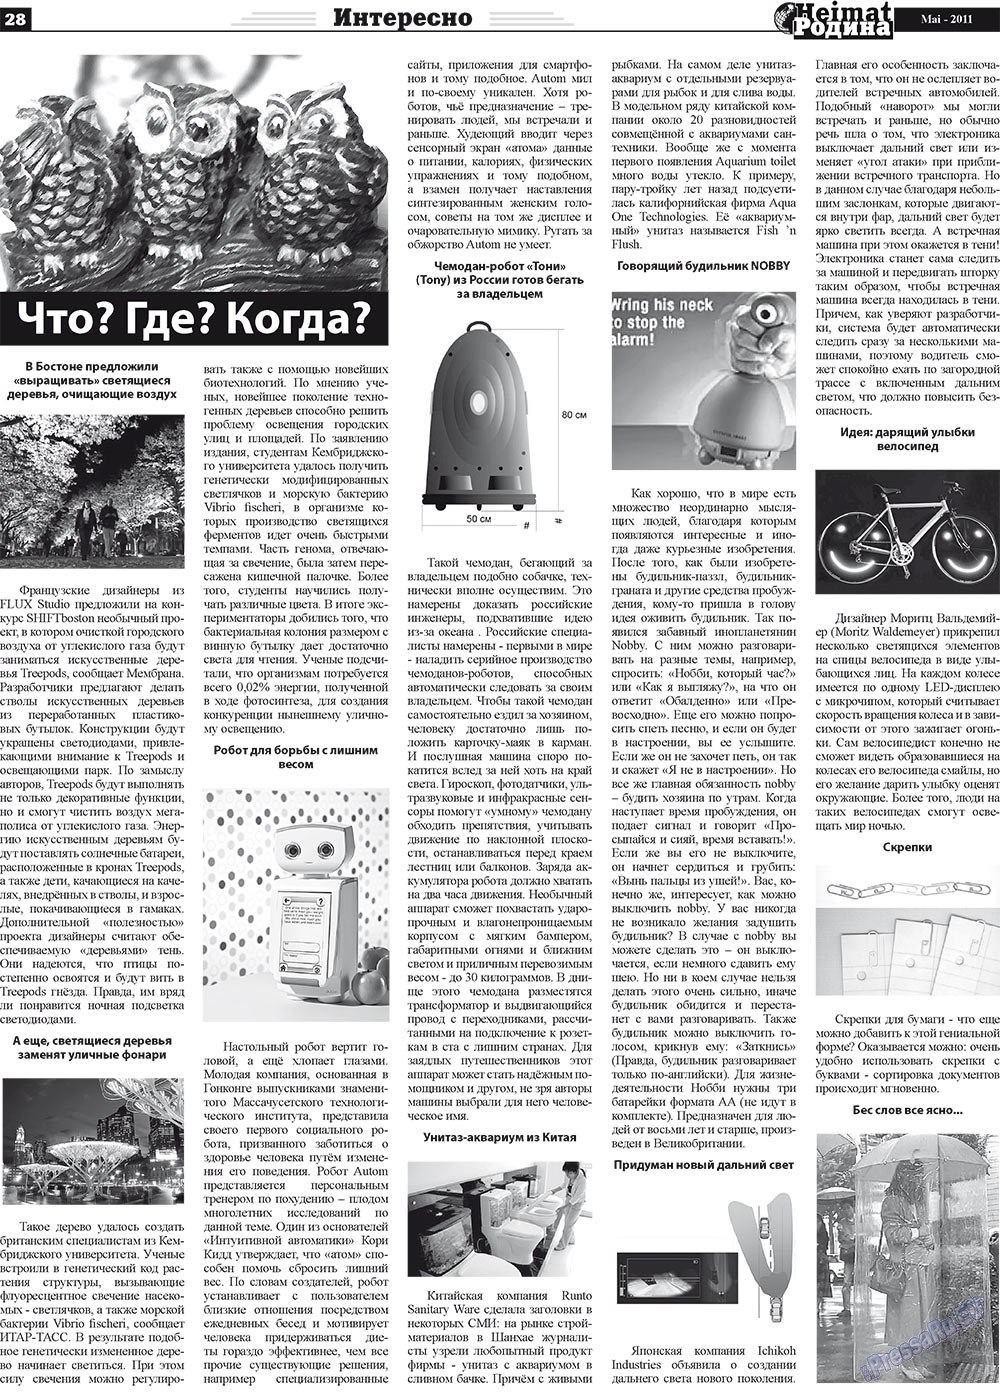 Heimat-Родина (газета). 2011 год, номер 5, стр. 28